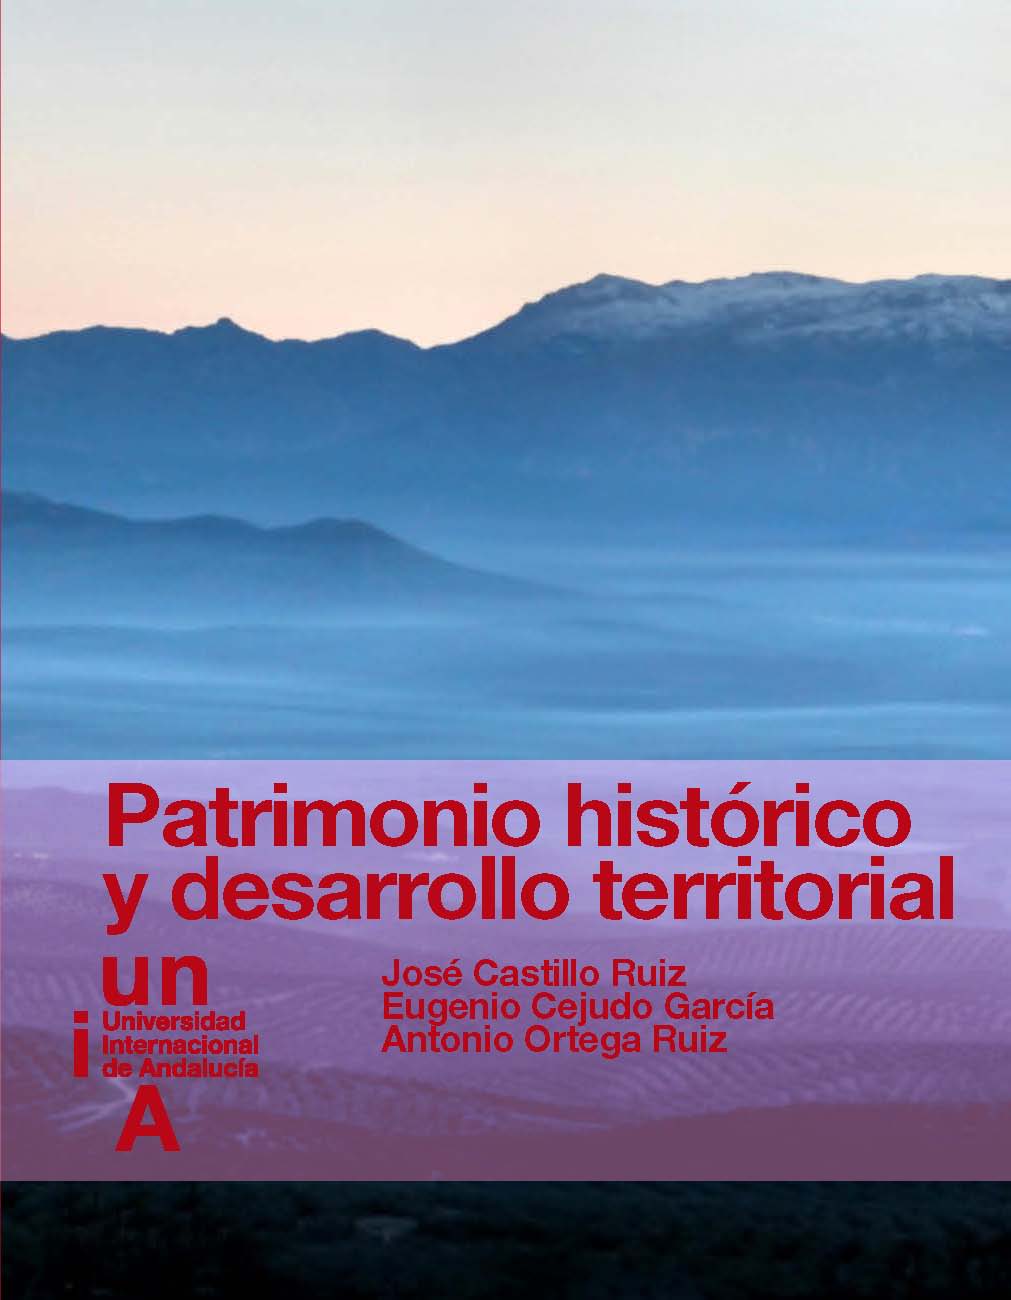 Imagen de portada del libro Patrimonio histórico y desarrollo territorial